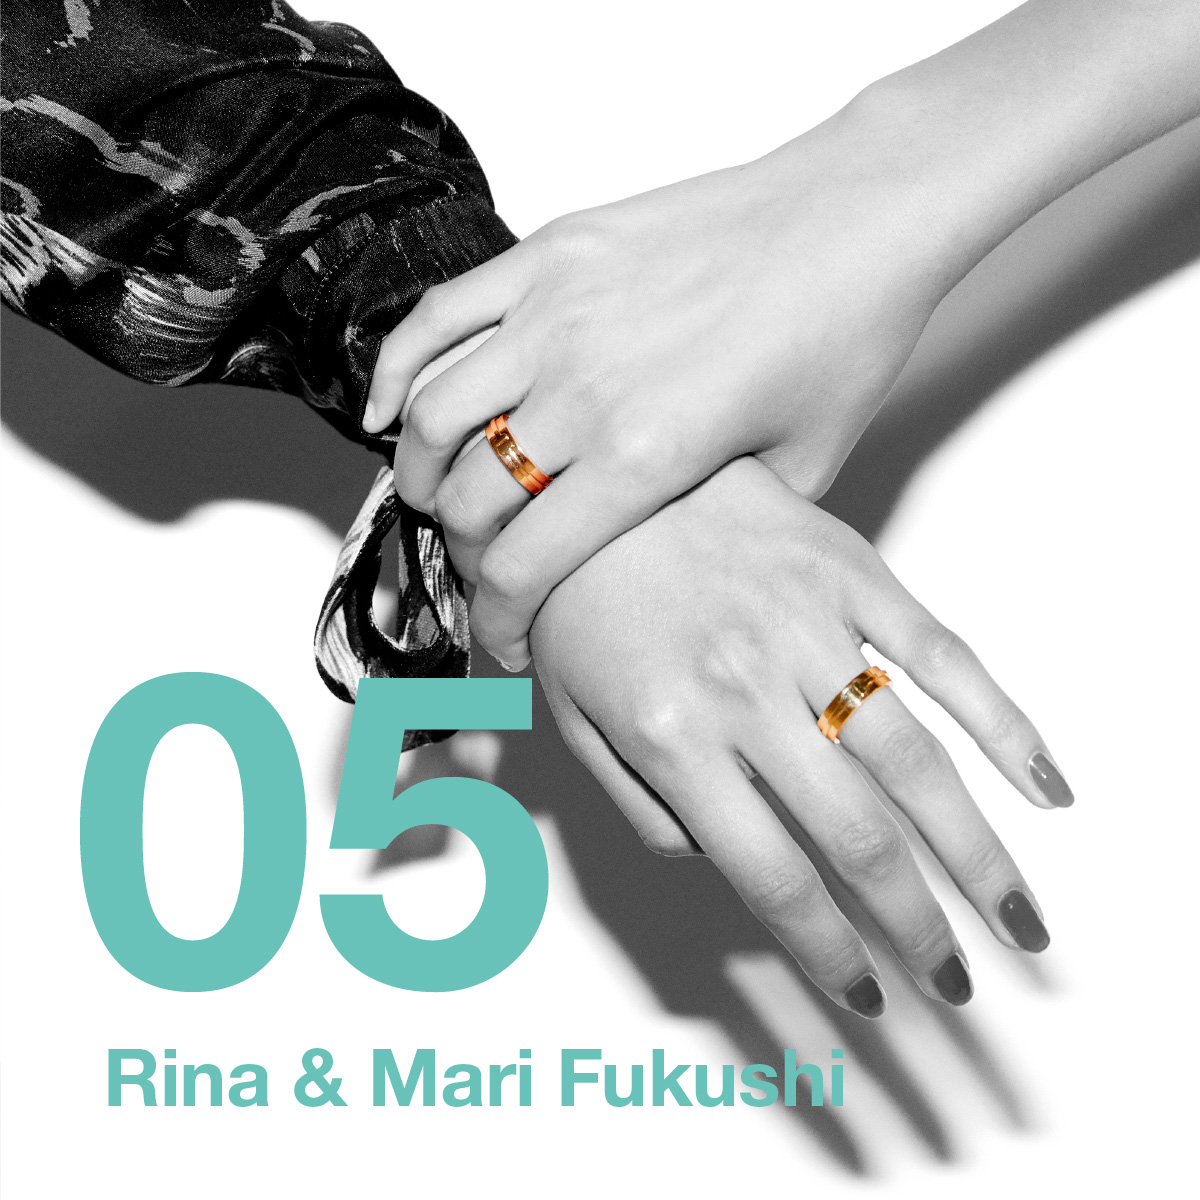 Rina & Mari Fukushi